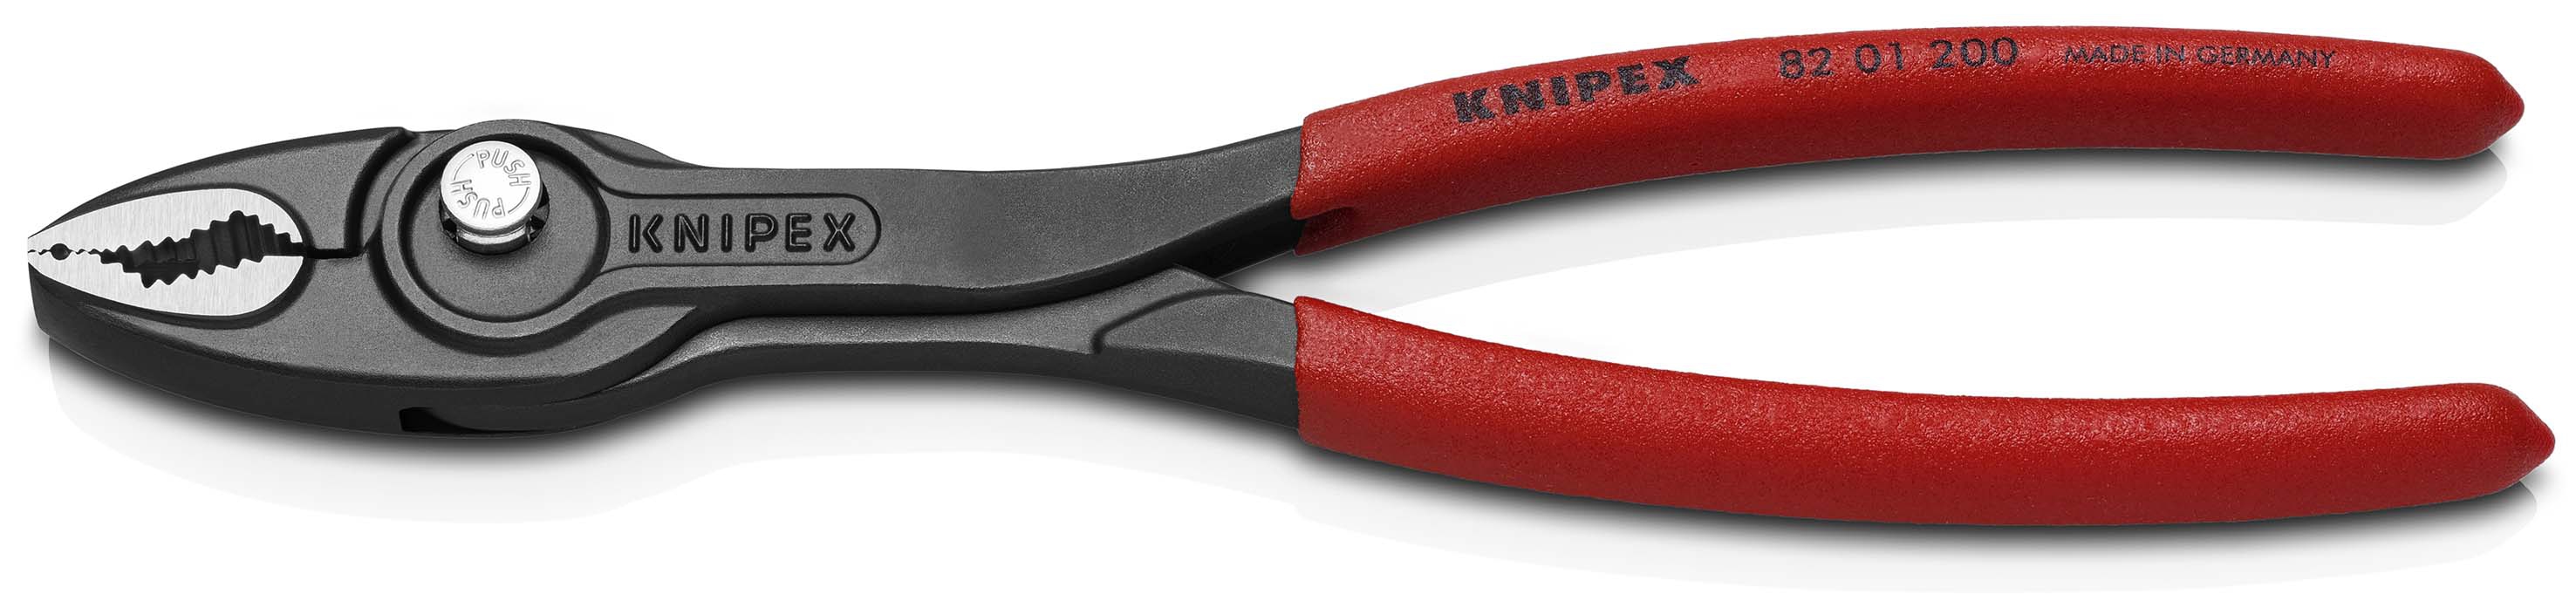 KNIPEX 82 01 200 TwinGrip Frontgreifzange mit rutschhemmendem Kunststoff überzogen schwarz atramentiert 200 mm